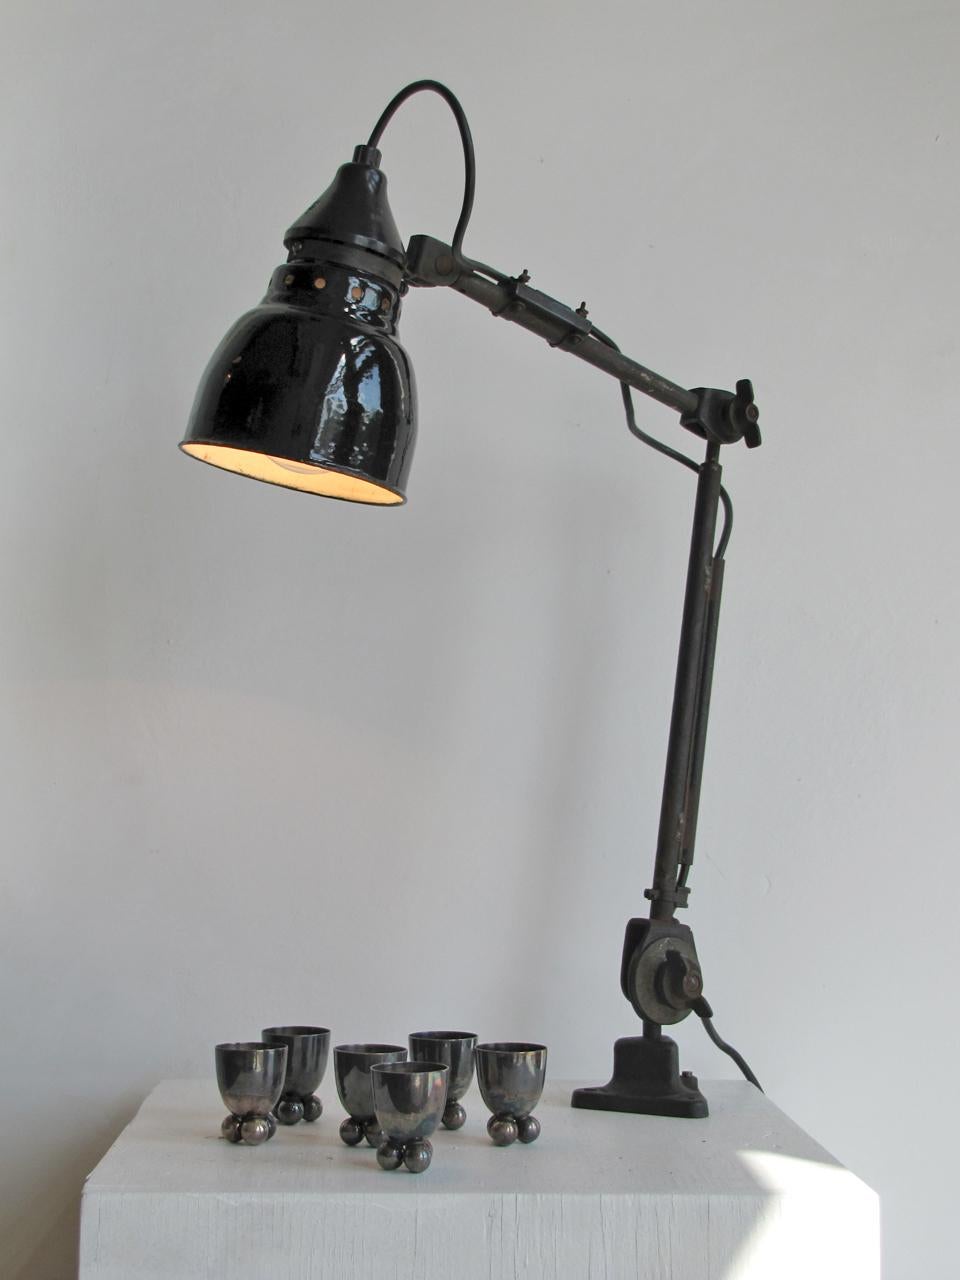 Wunderschöne Arbeitsleuchte von Rademacher, Deutschland, aus den 1930er Jahren, voll verstellbar mit Befestigung an einer Tischplatte oder optional an einem Stahlsockel, eine E26-Fassung, max. Wattleistung 75 W oder LED-Äquivalent, verkabelt nach